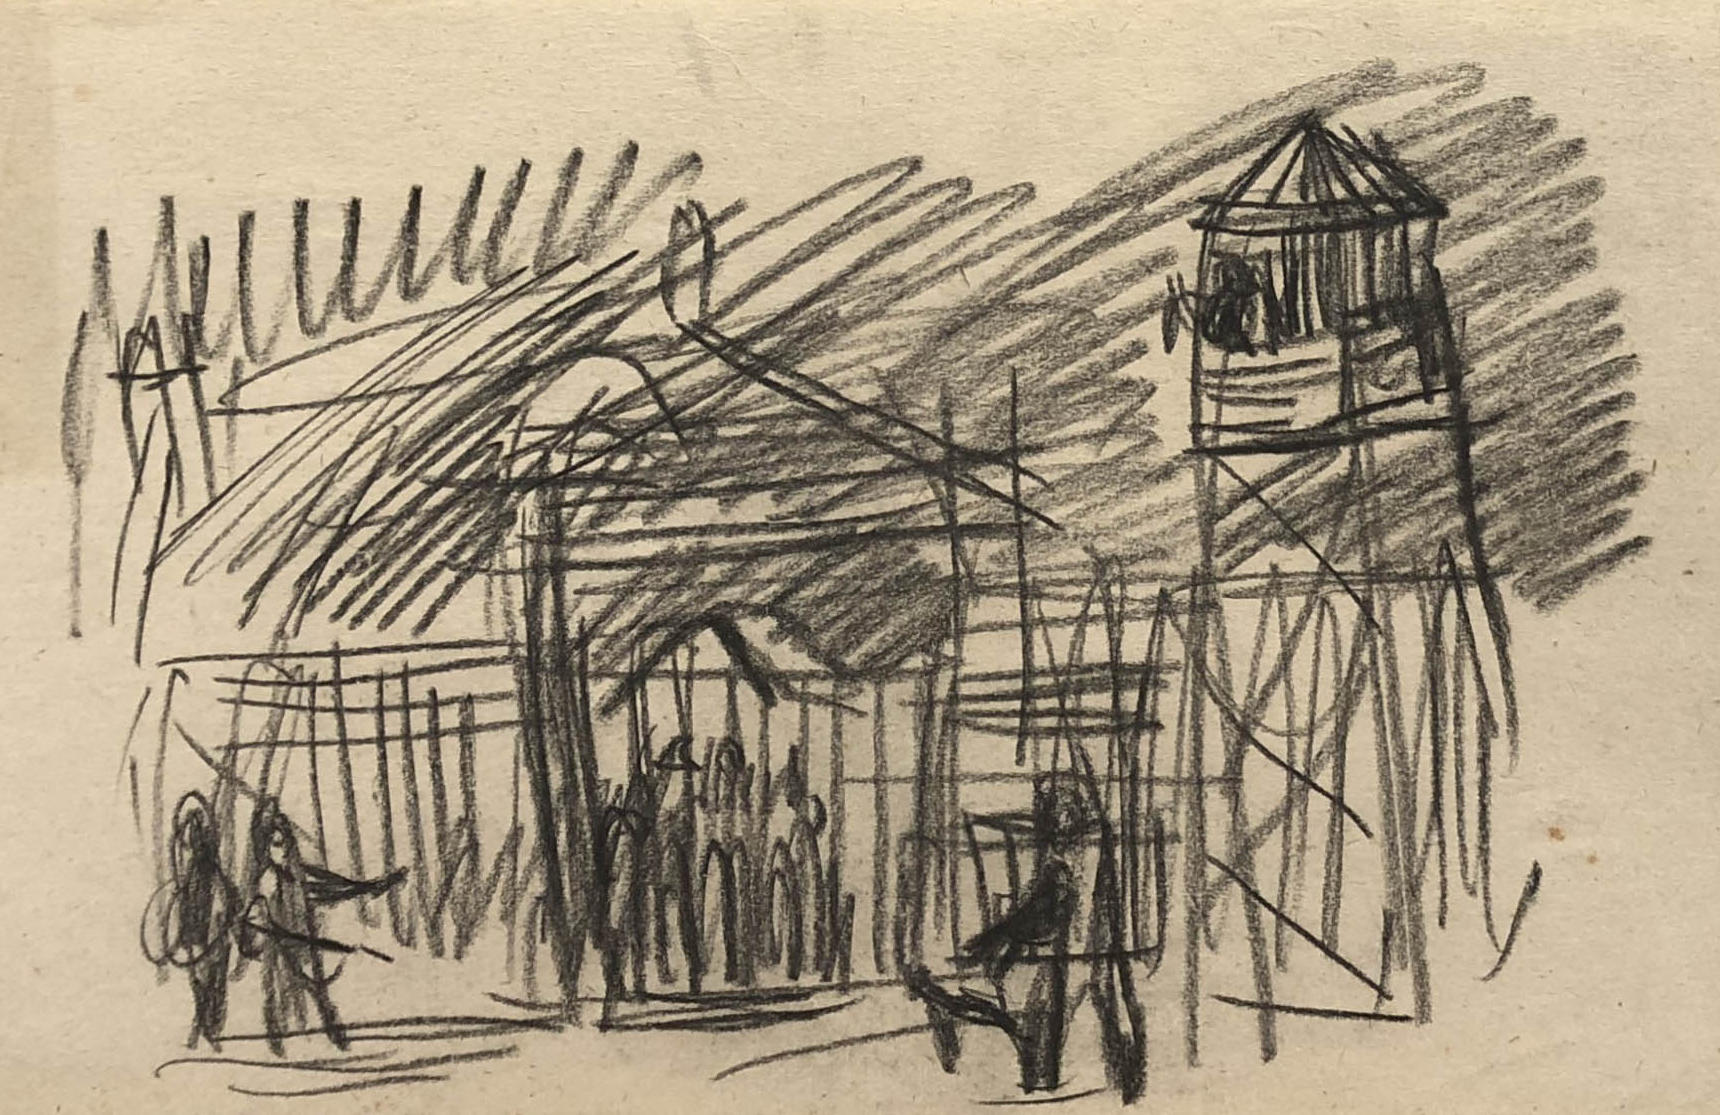 Rysunek przedstawiający bramę do łagru, oraz wieżyczkę strażniczą. Adam Kossowski, rys. ołówkiem, praca stworzona w Londynie w 1943 roku.